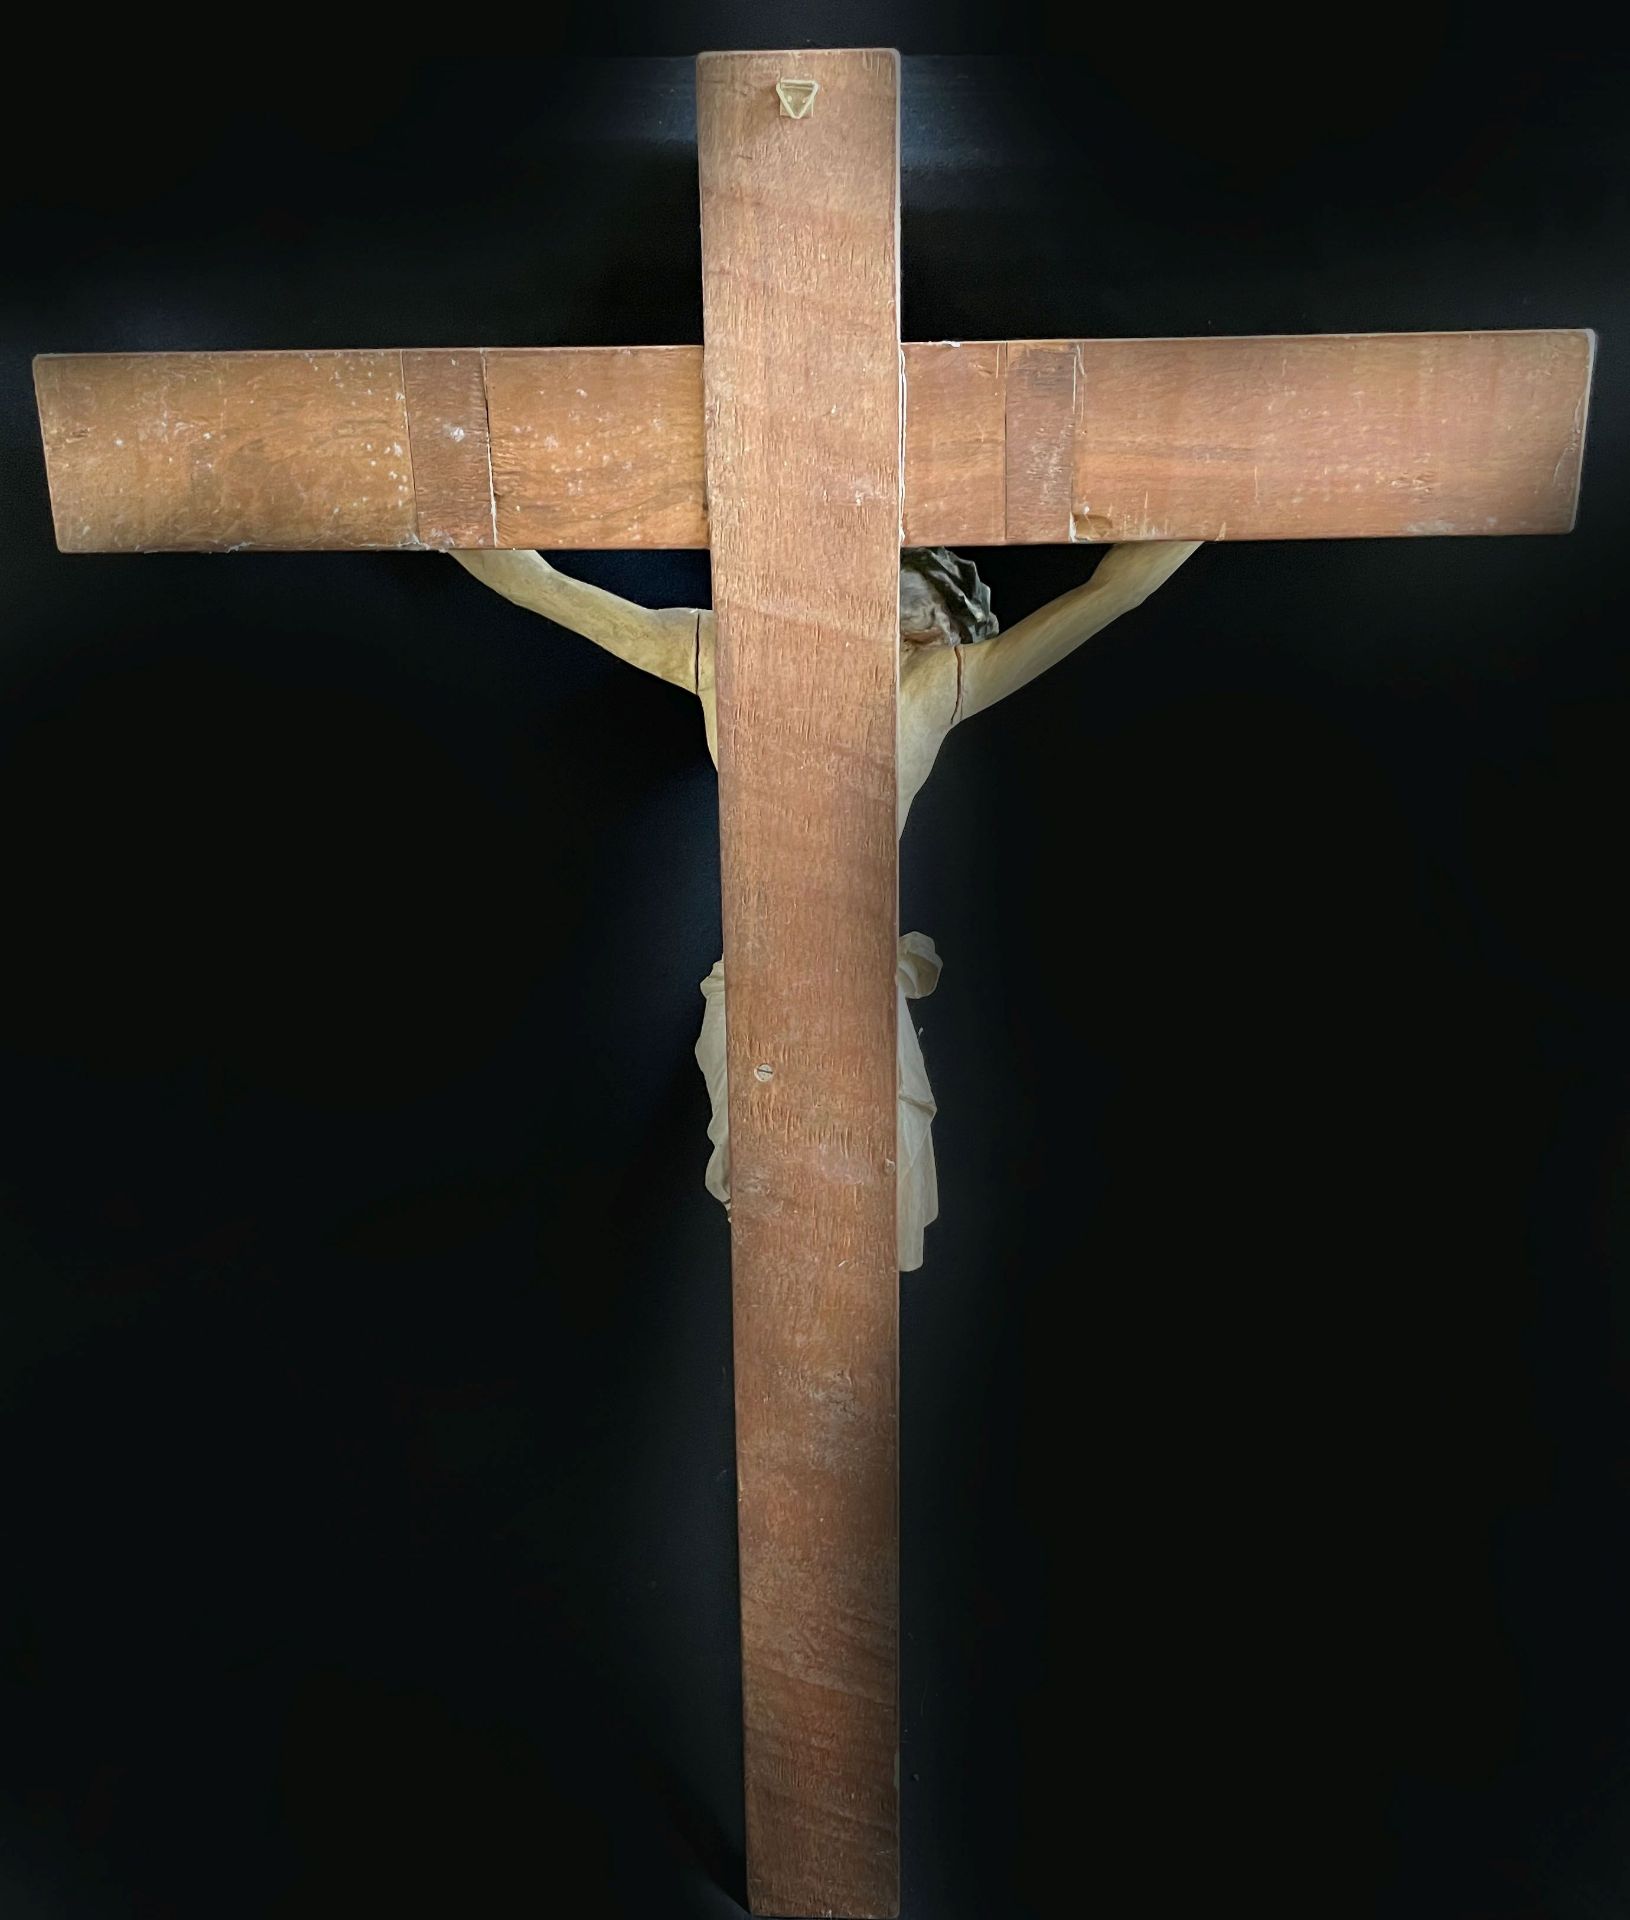 Kruzifix, 18./19. Jh., Corpus Christi im Dreinageltypus, Holz, farbig gefasst, Altersspuren, H. 83 - Bild 2 aus 3